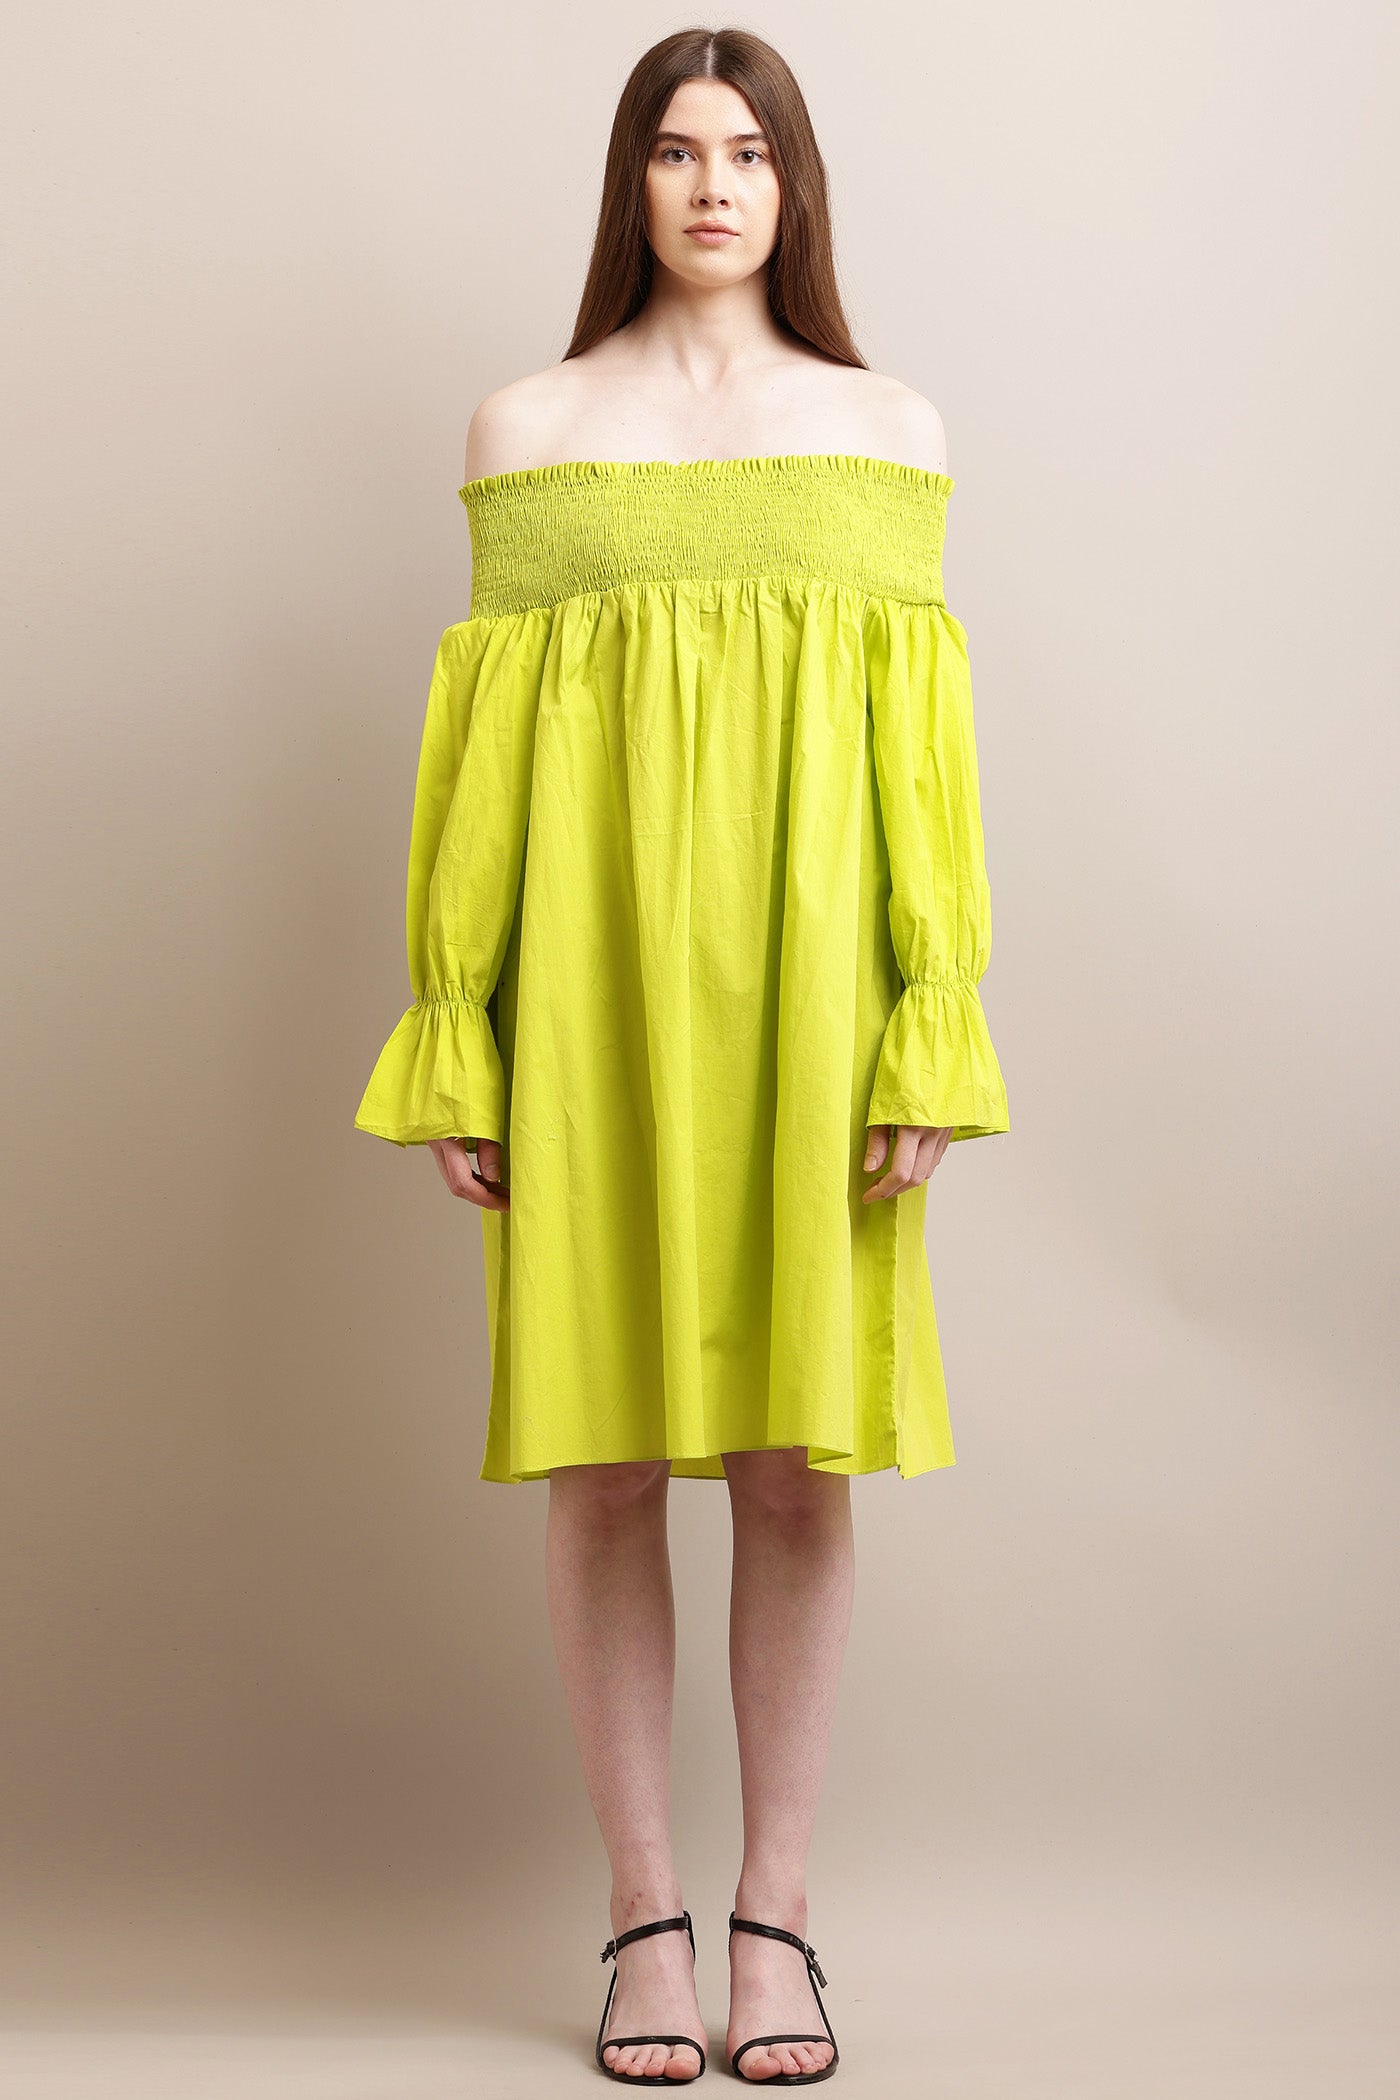 Lime Green Off Shoulder Dress